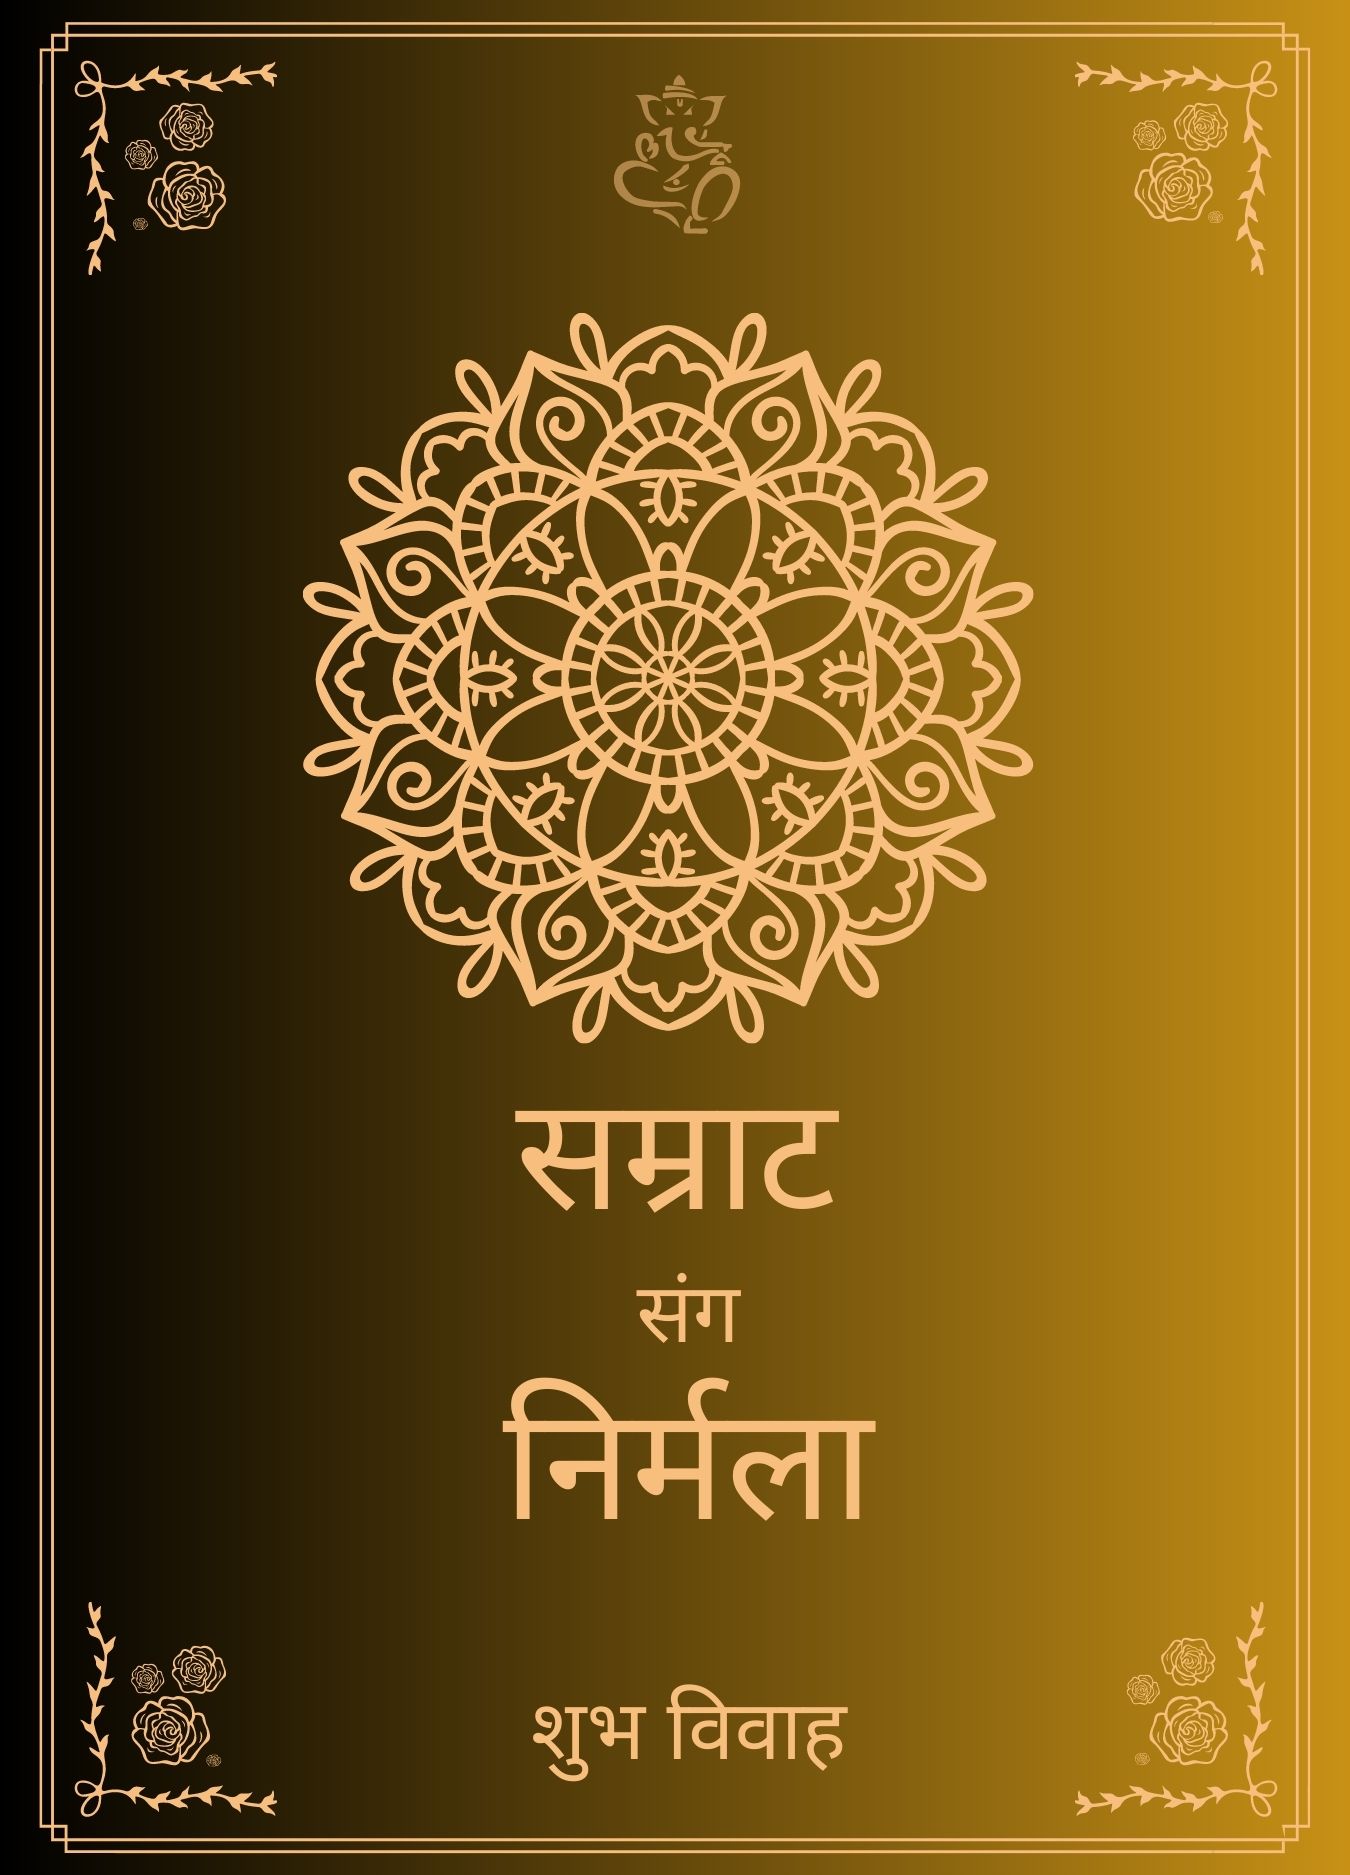 wedding card in hindi